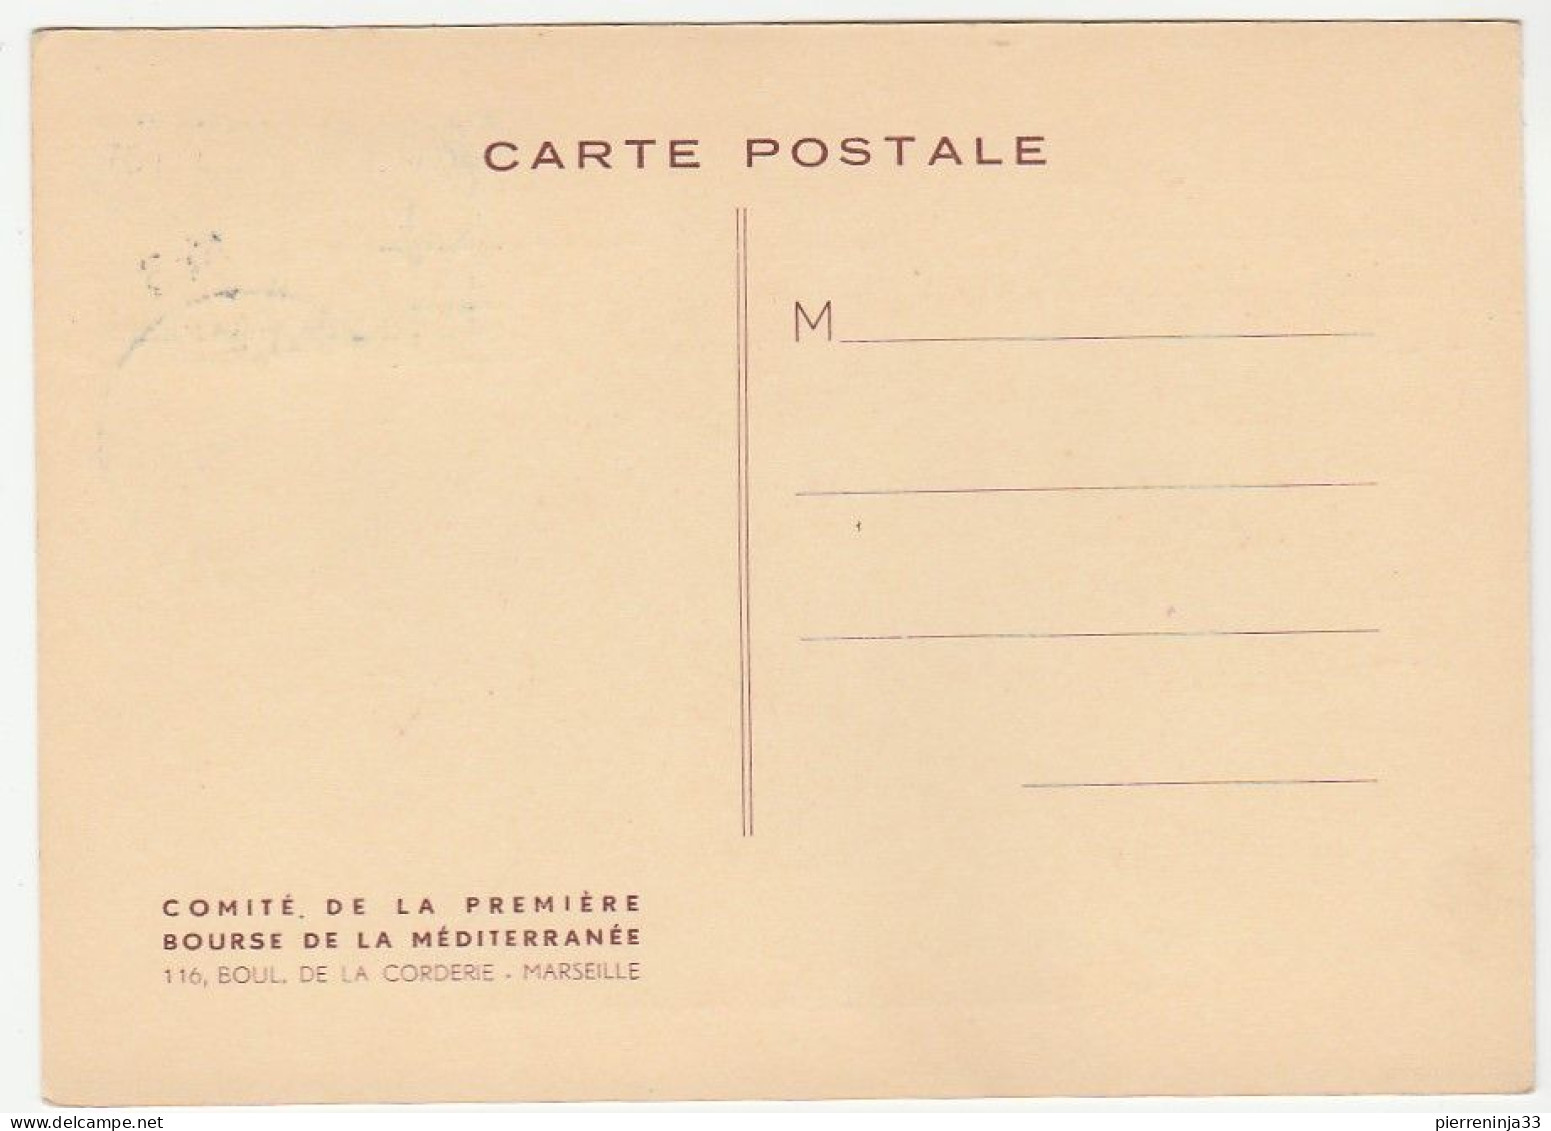 Carte De La 1ère Bourse Philatélique De La Méditerranée, 1955 - Briefe U. Dokumente